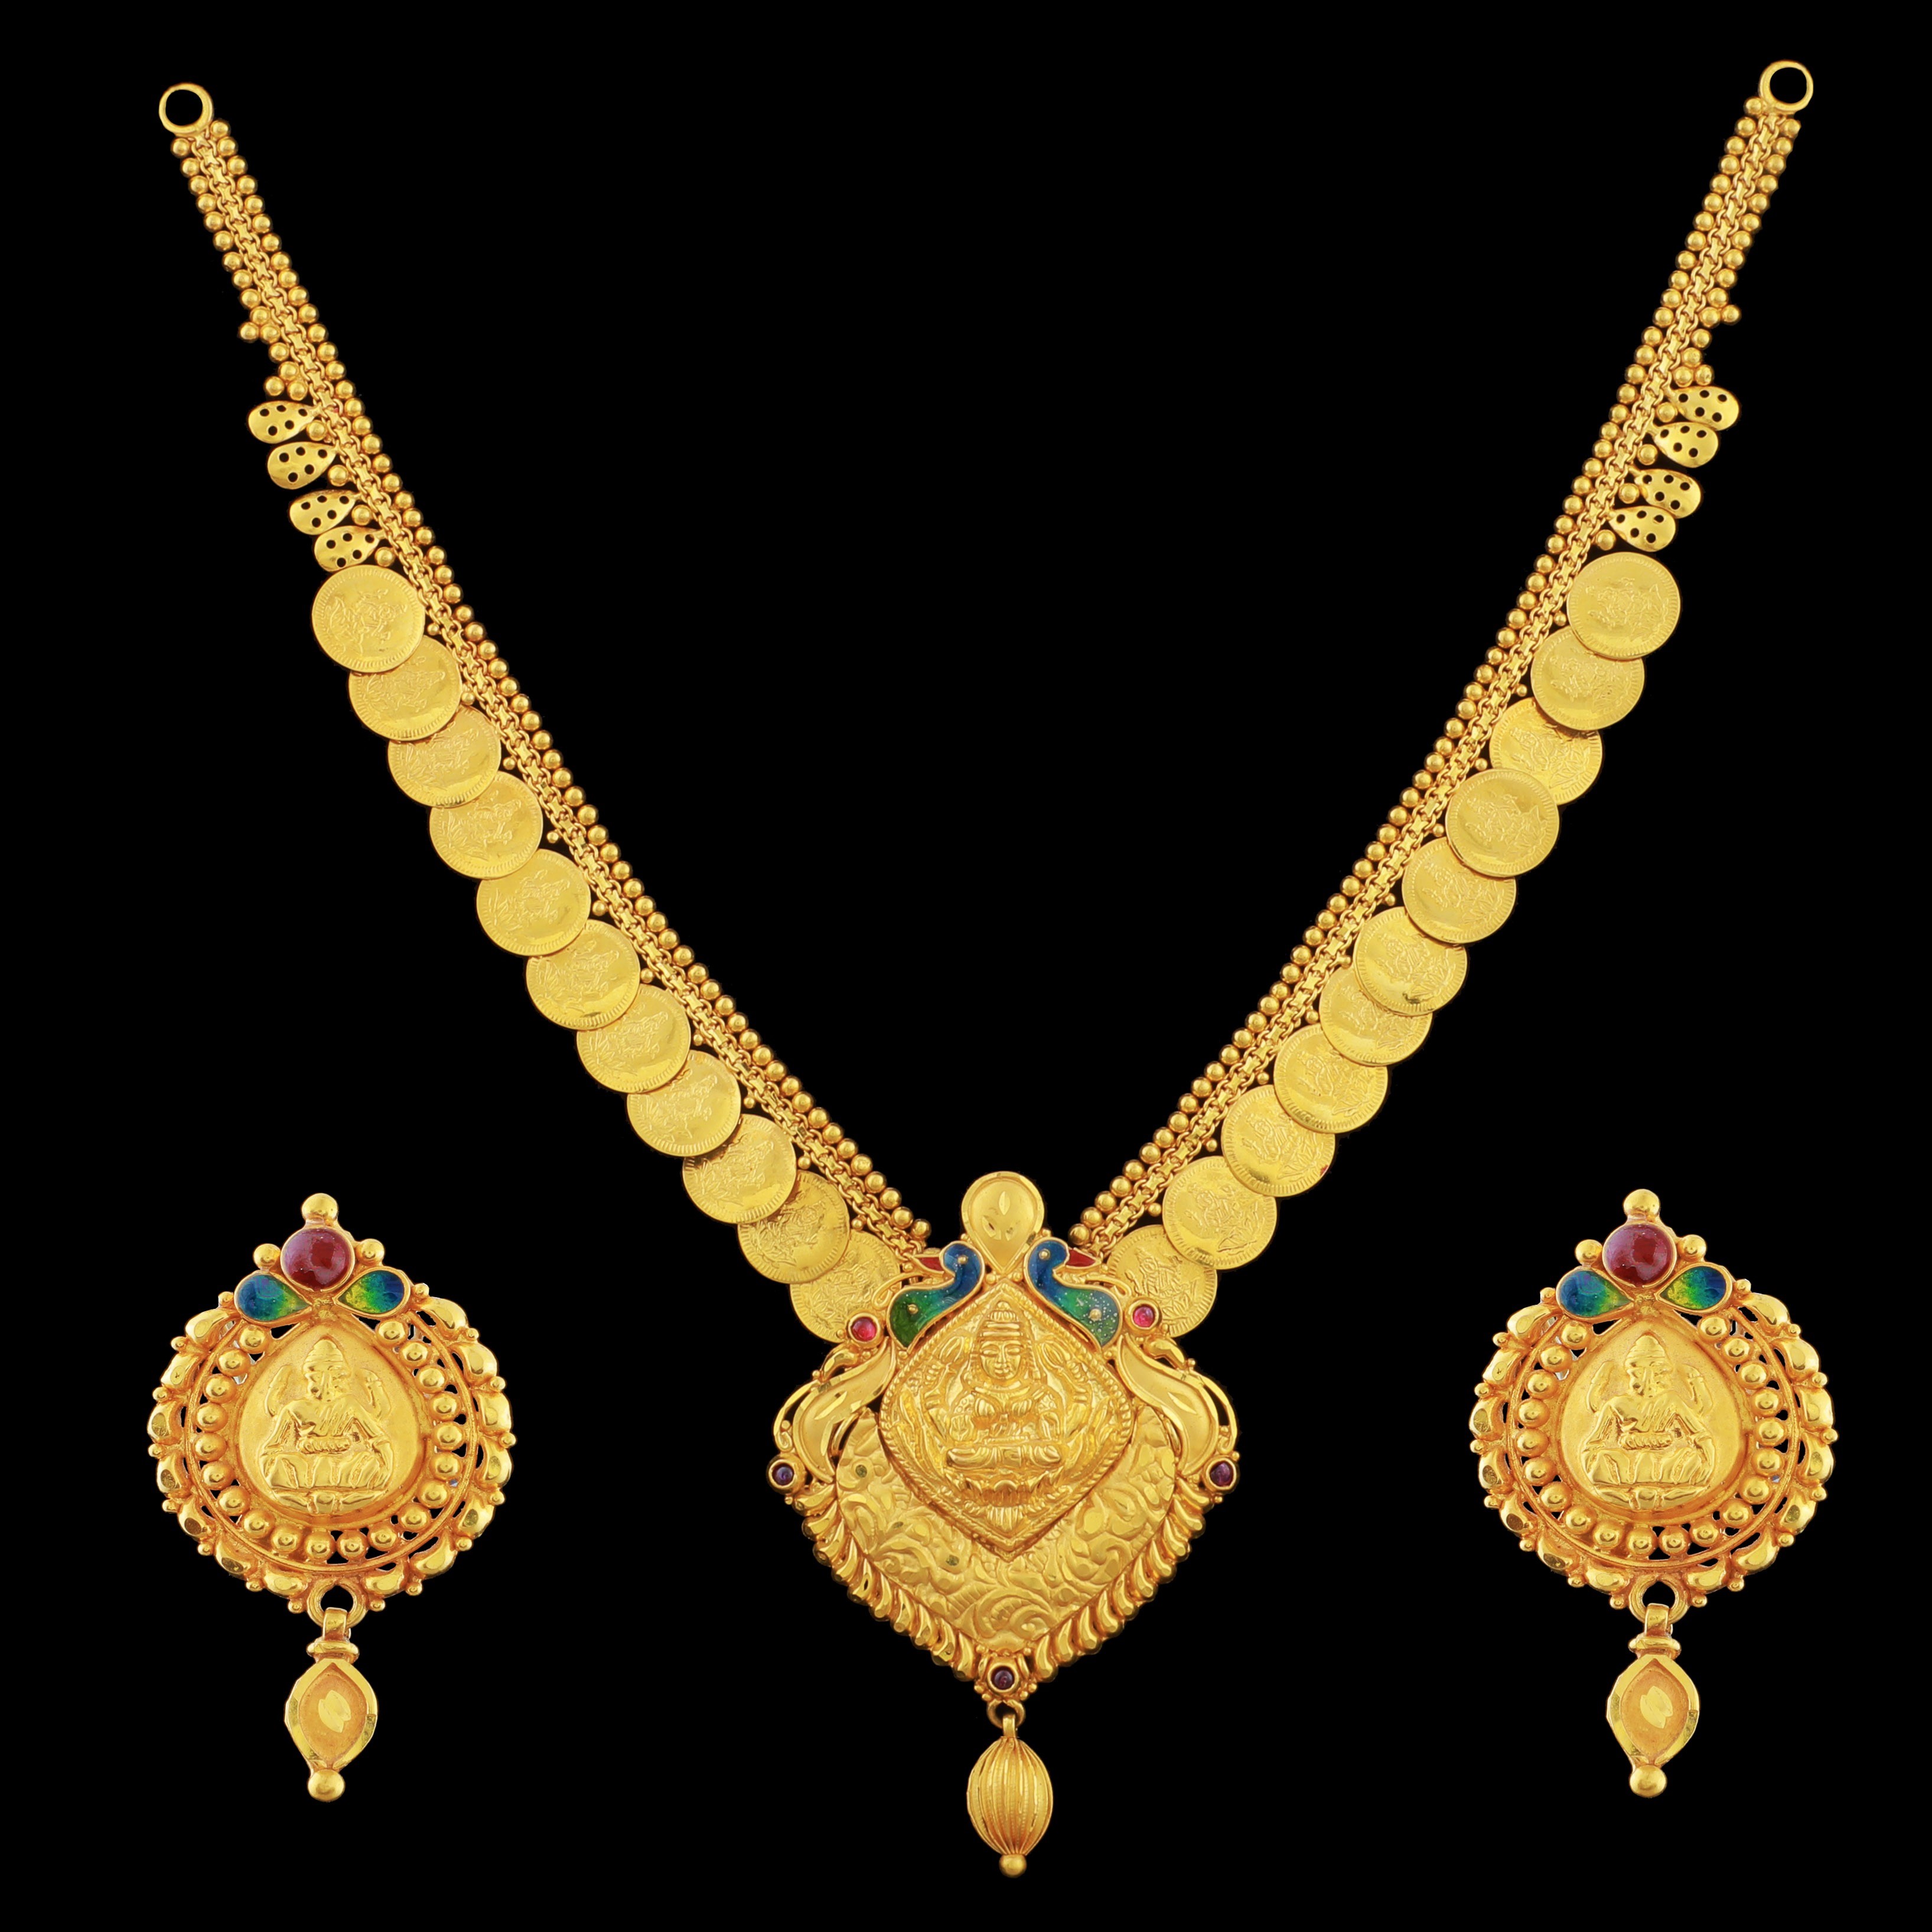 22 Carat Gold Temple Jewellery - Jewellery Designs